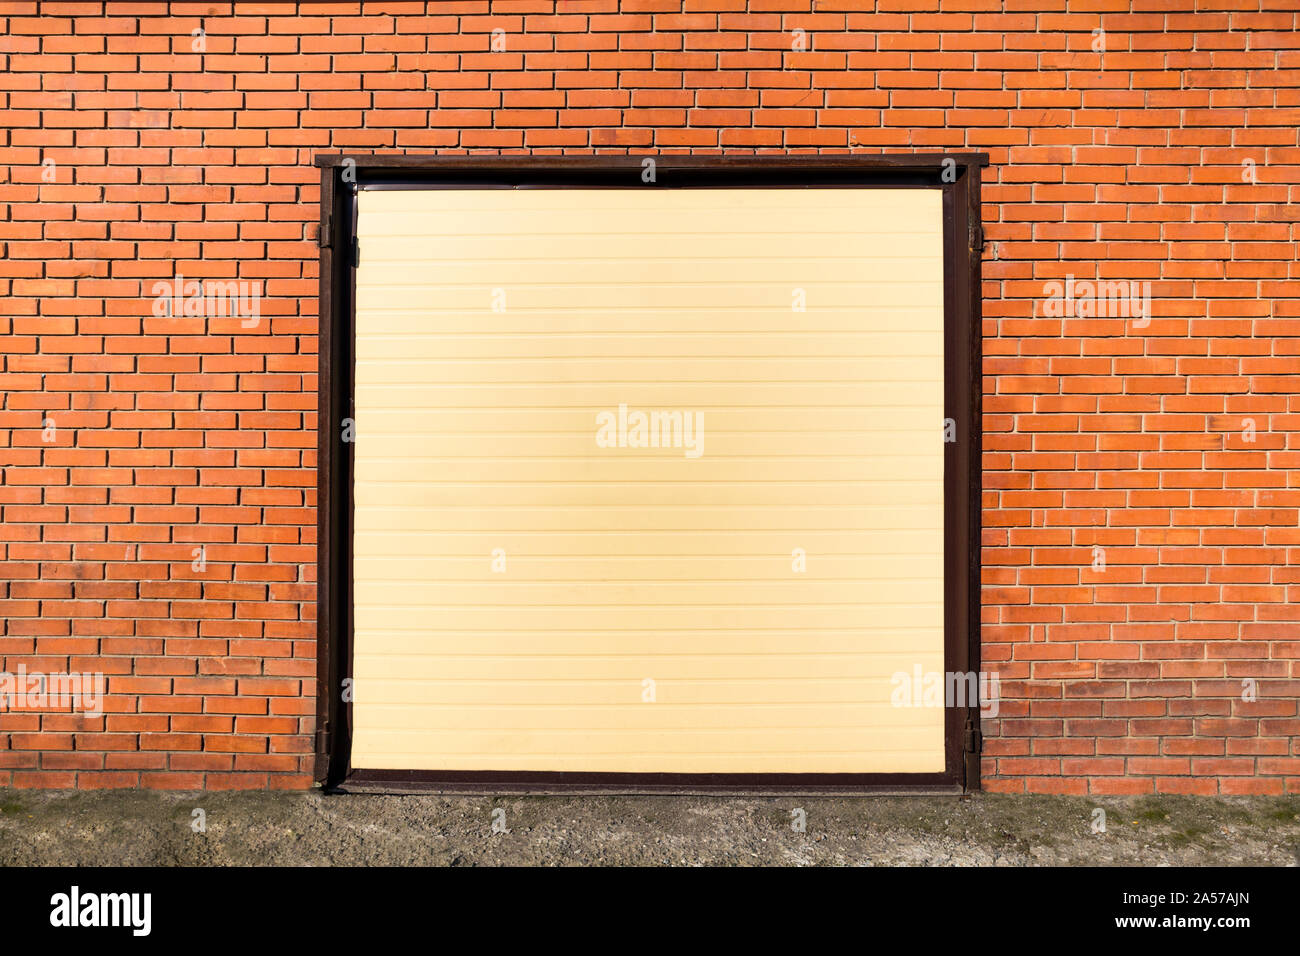 Façade d'un jaune orange avec garage fermé une porte sur un mur de brique à l'extérieur dans l'herbe verte. Portes automatiques Banque D'Images